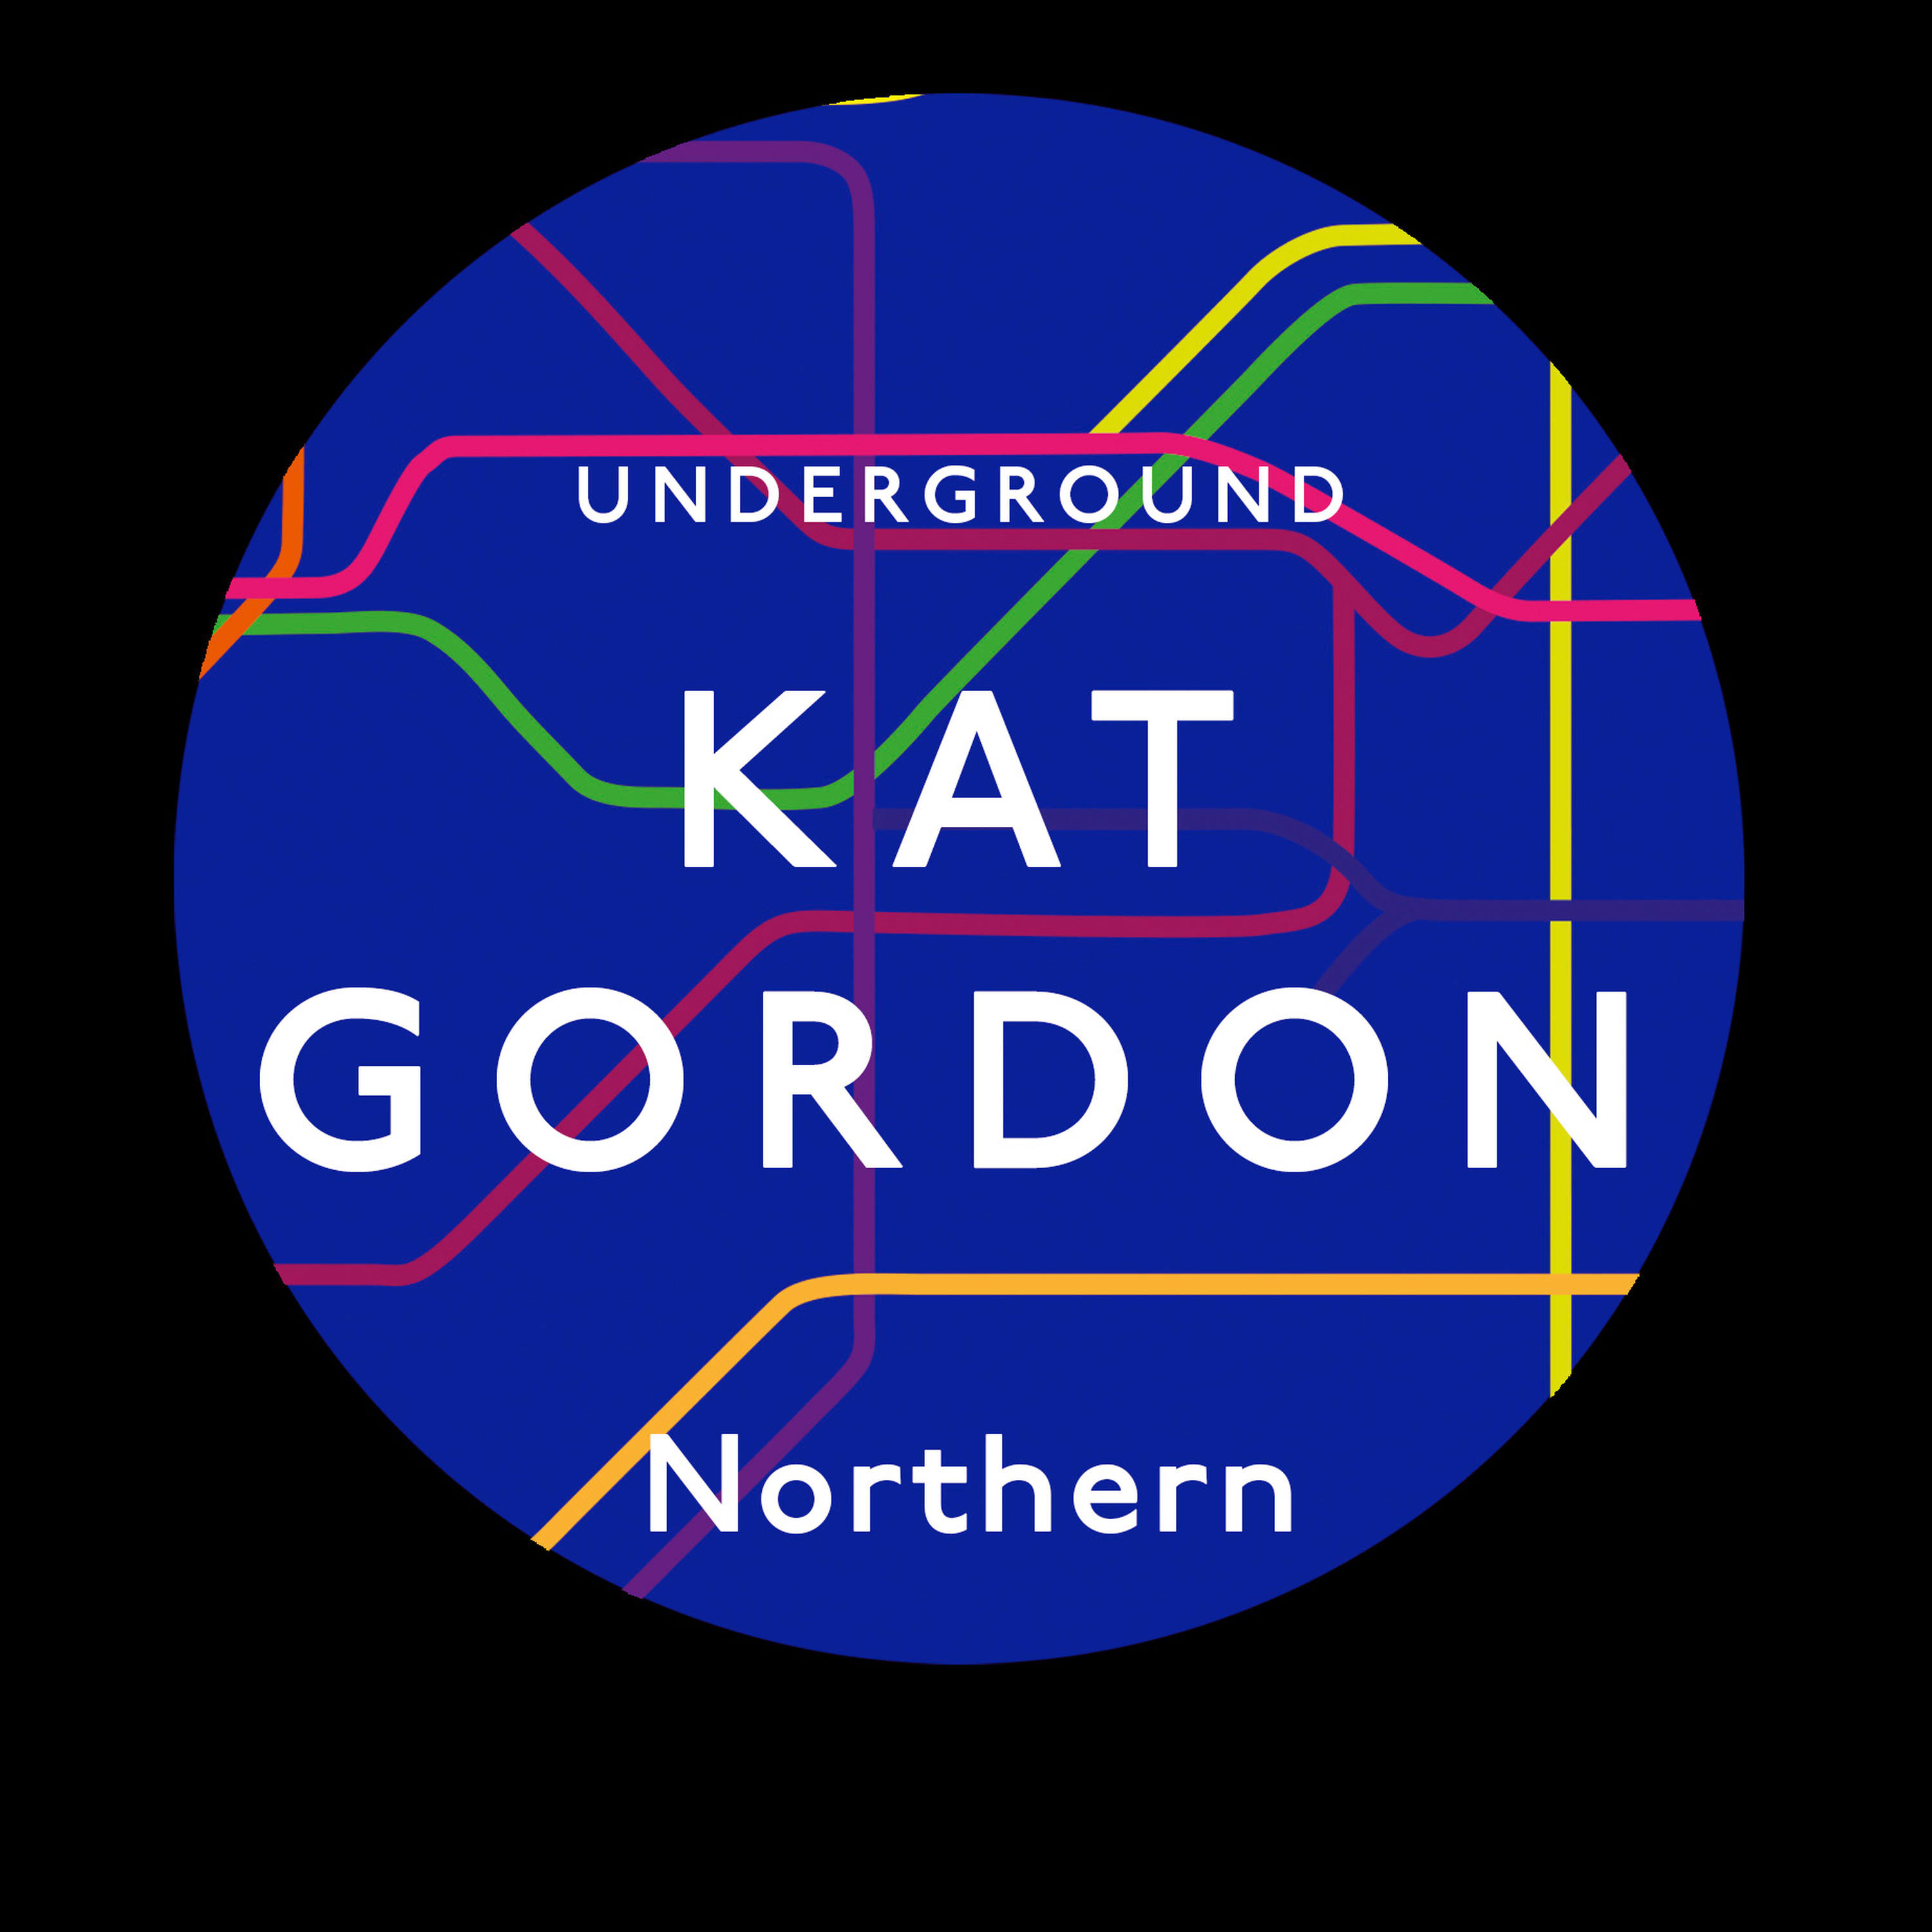 Northern - Kat Gordon